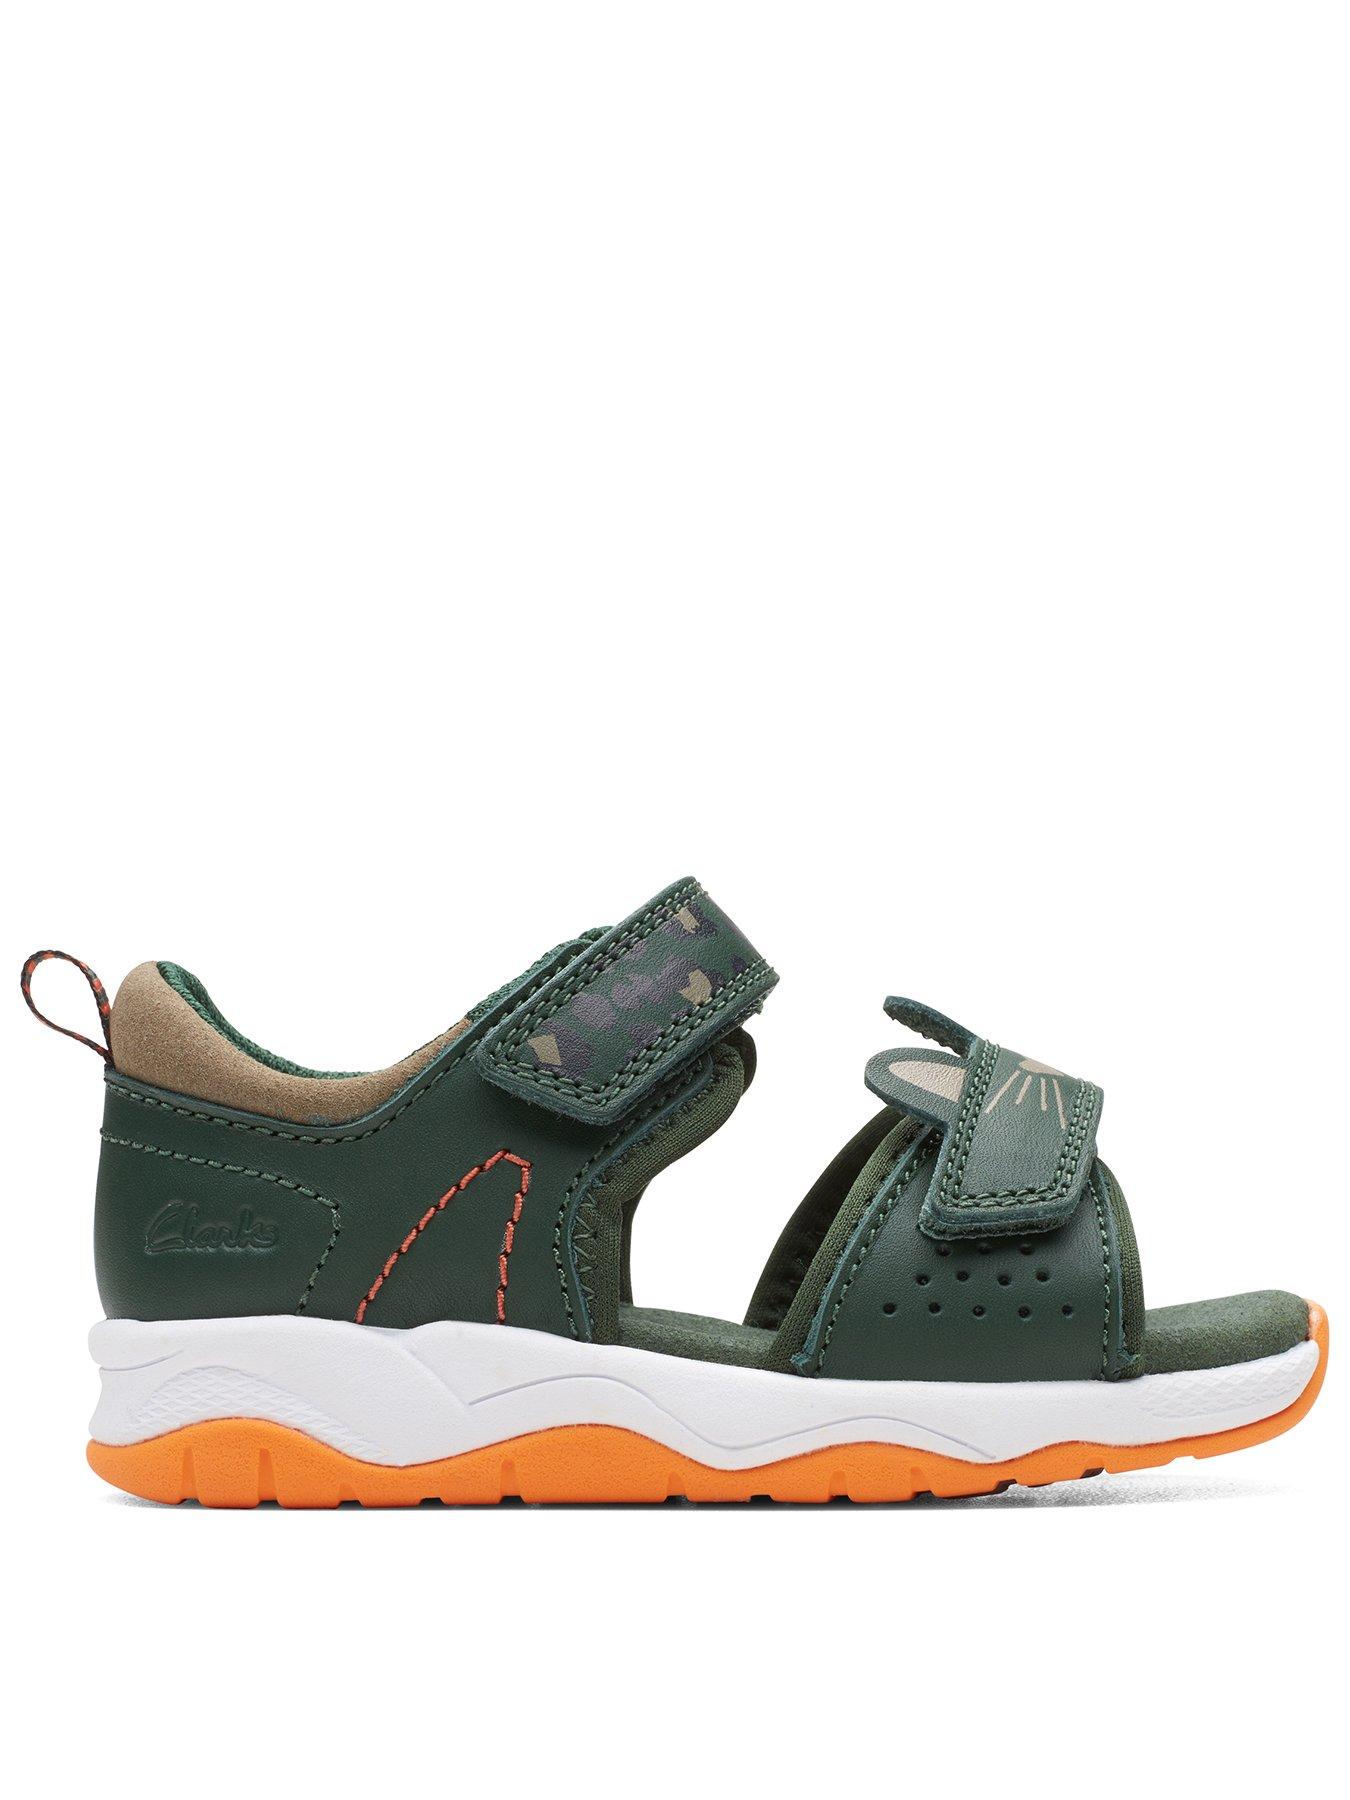 Amazon.com | Clarks Women's Arla Shore Flat Sandal, Black Textile, 5 |  Sport Sandals & Slides